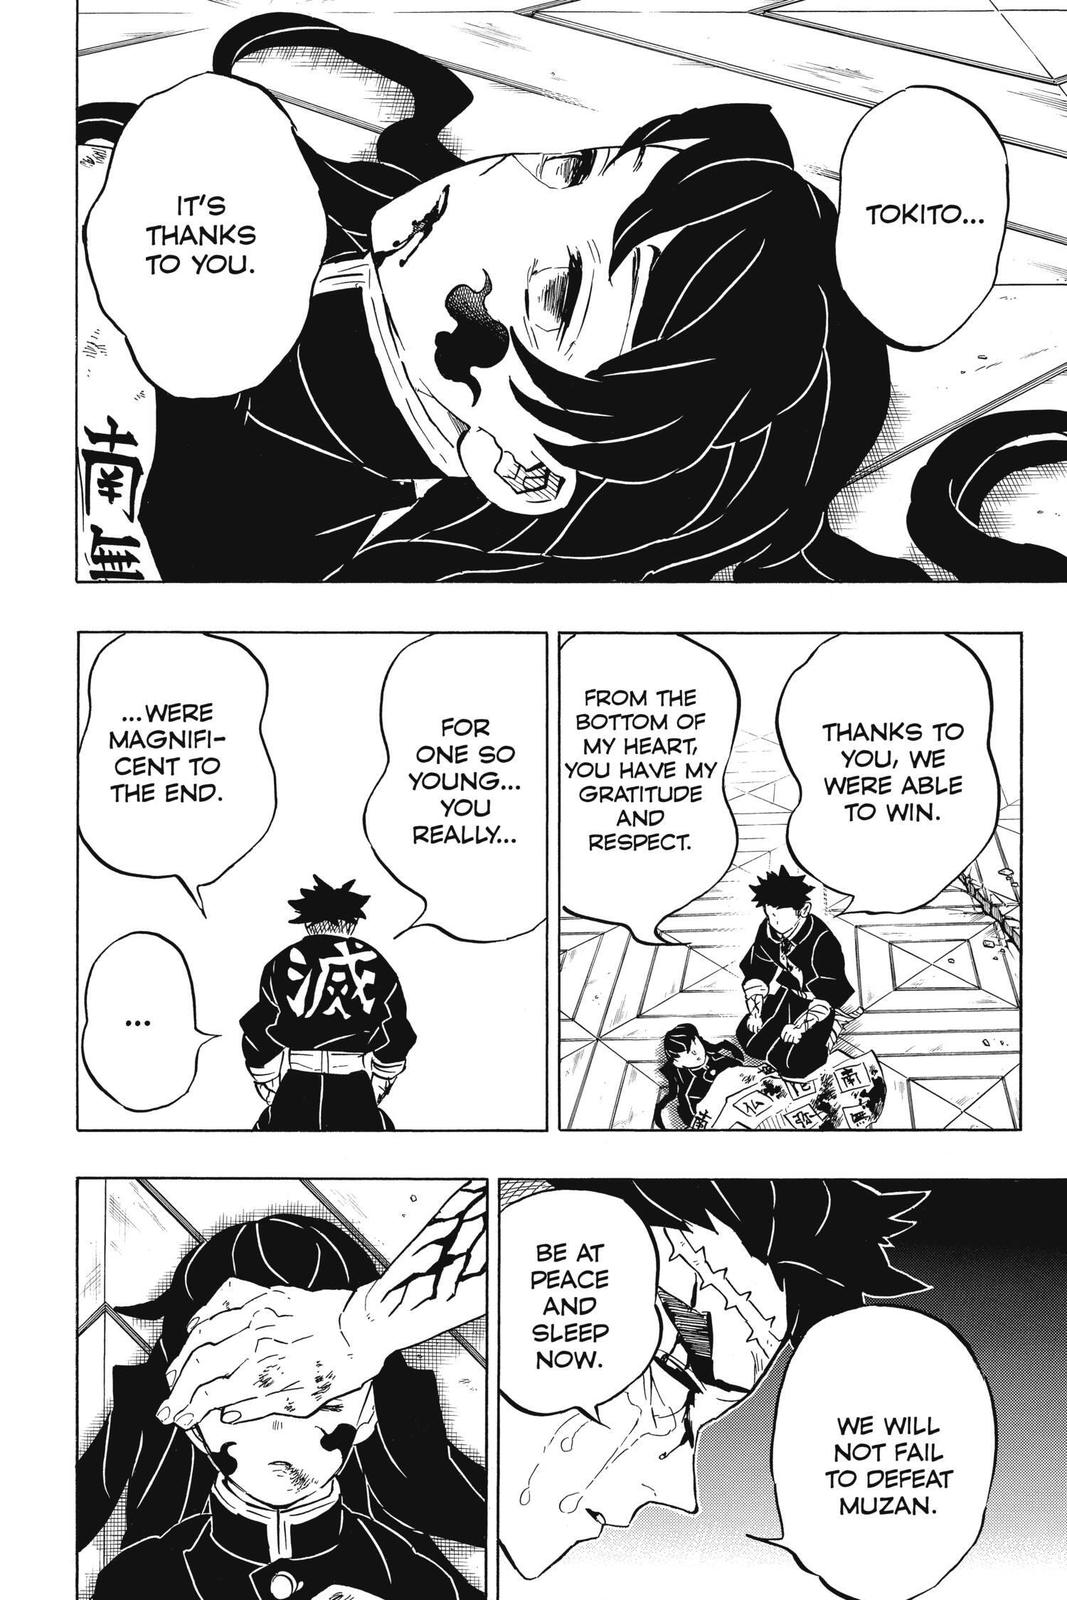 Demon Slayer Manga Manga Chapter - 179 - image 4